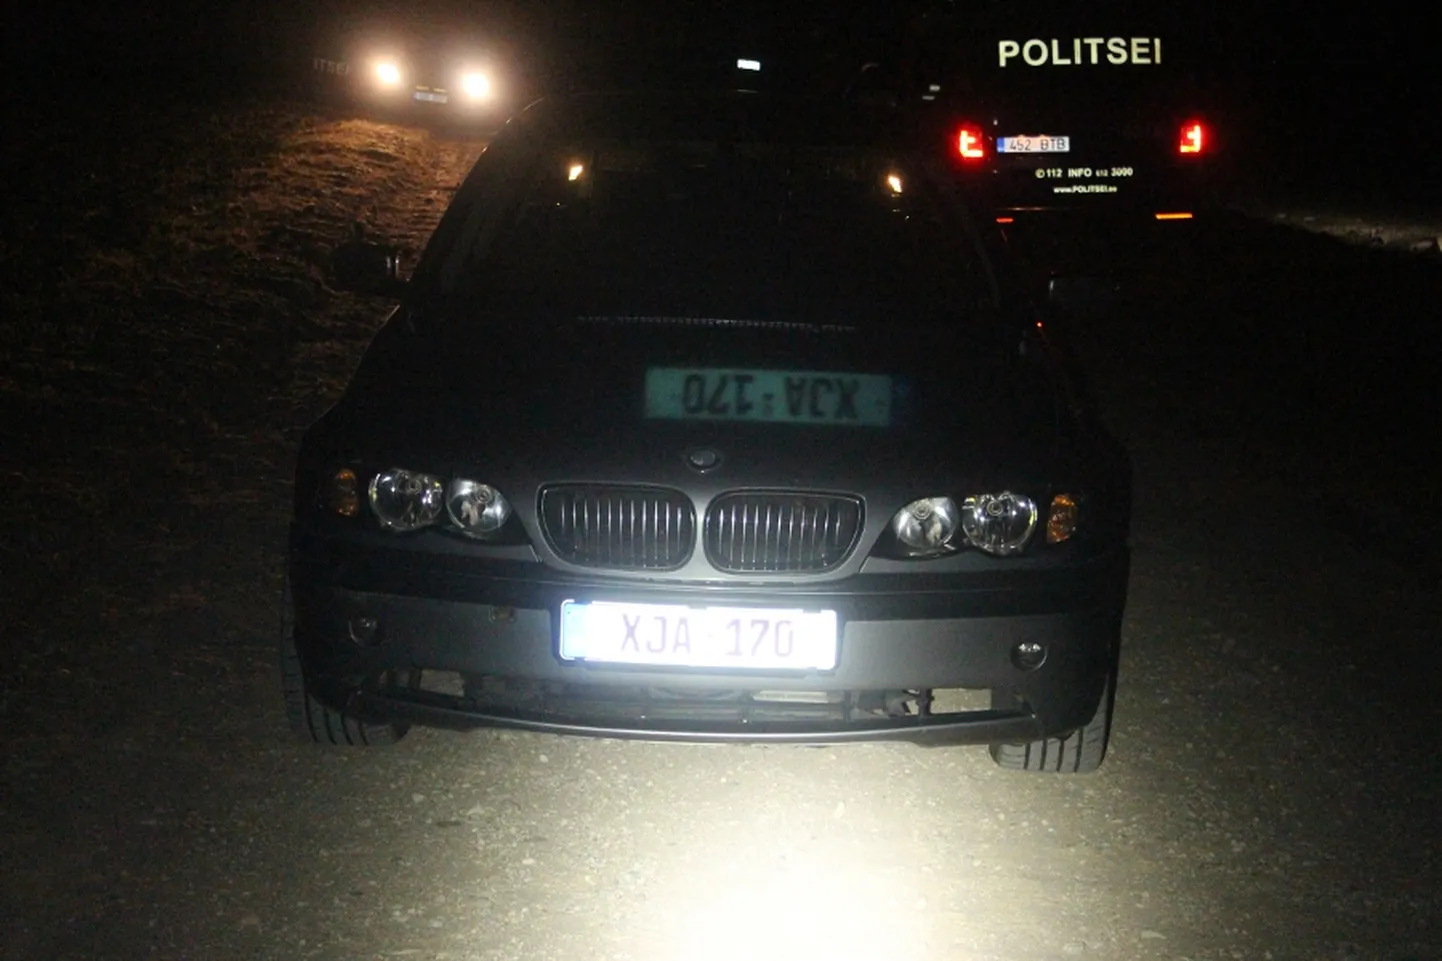 Eile, 13. aprilli õhtul kella 22 paiku politseipatrull Viljandimaal Mustla alevikus välismaise registreerimisnumbriga BMW-d, mida otsustati kontrollida, kuid sõidukijuht eiras peatumismärguannet ning põgenes.